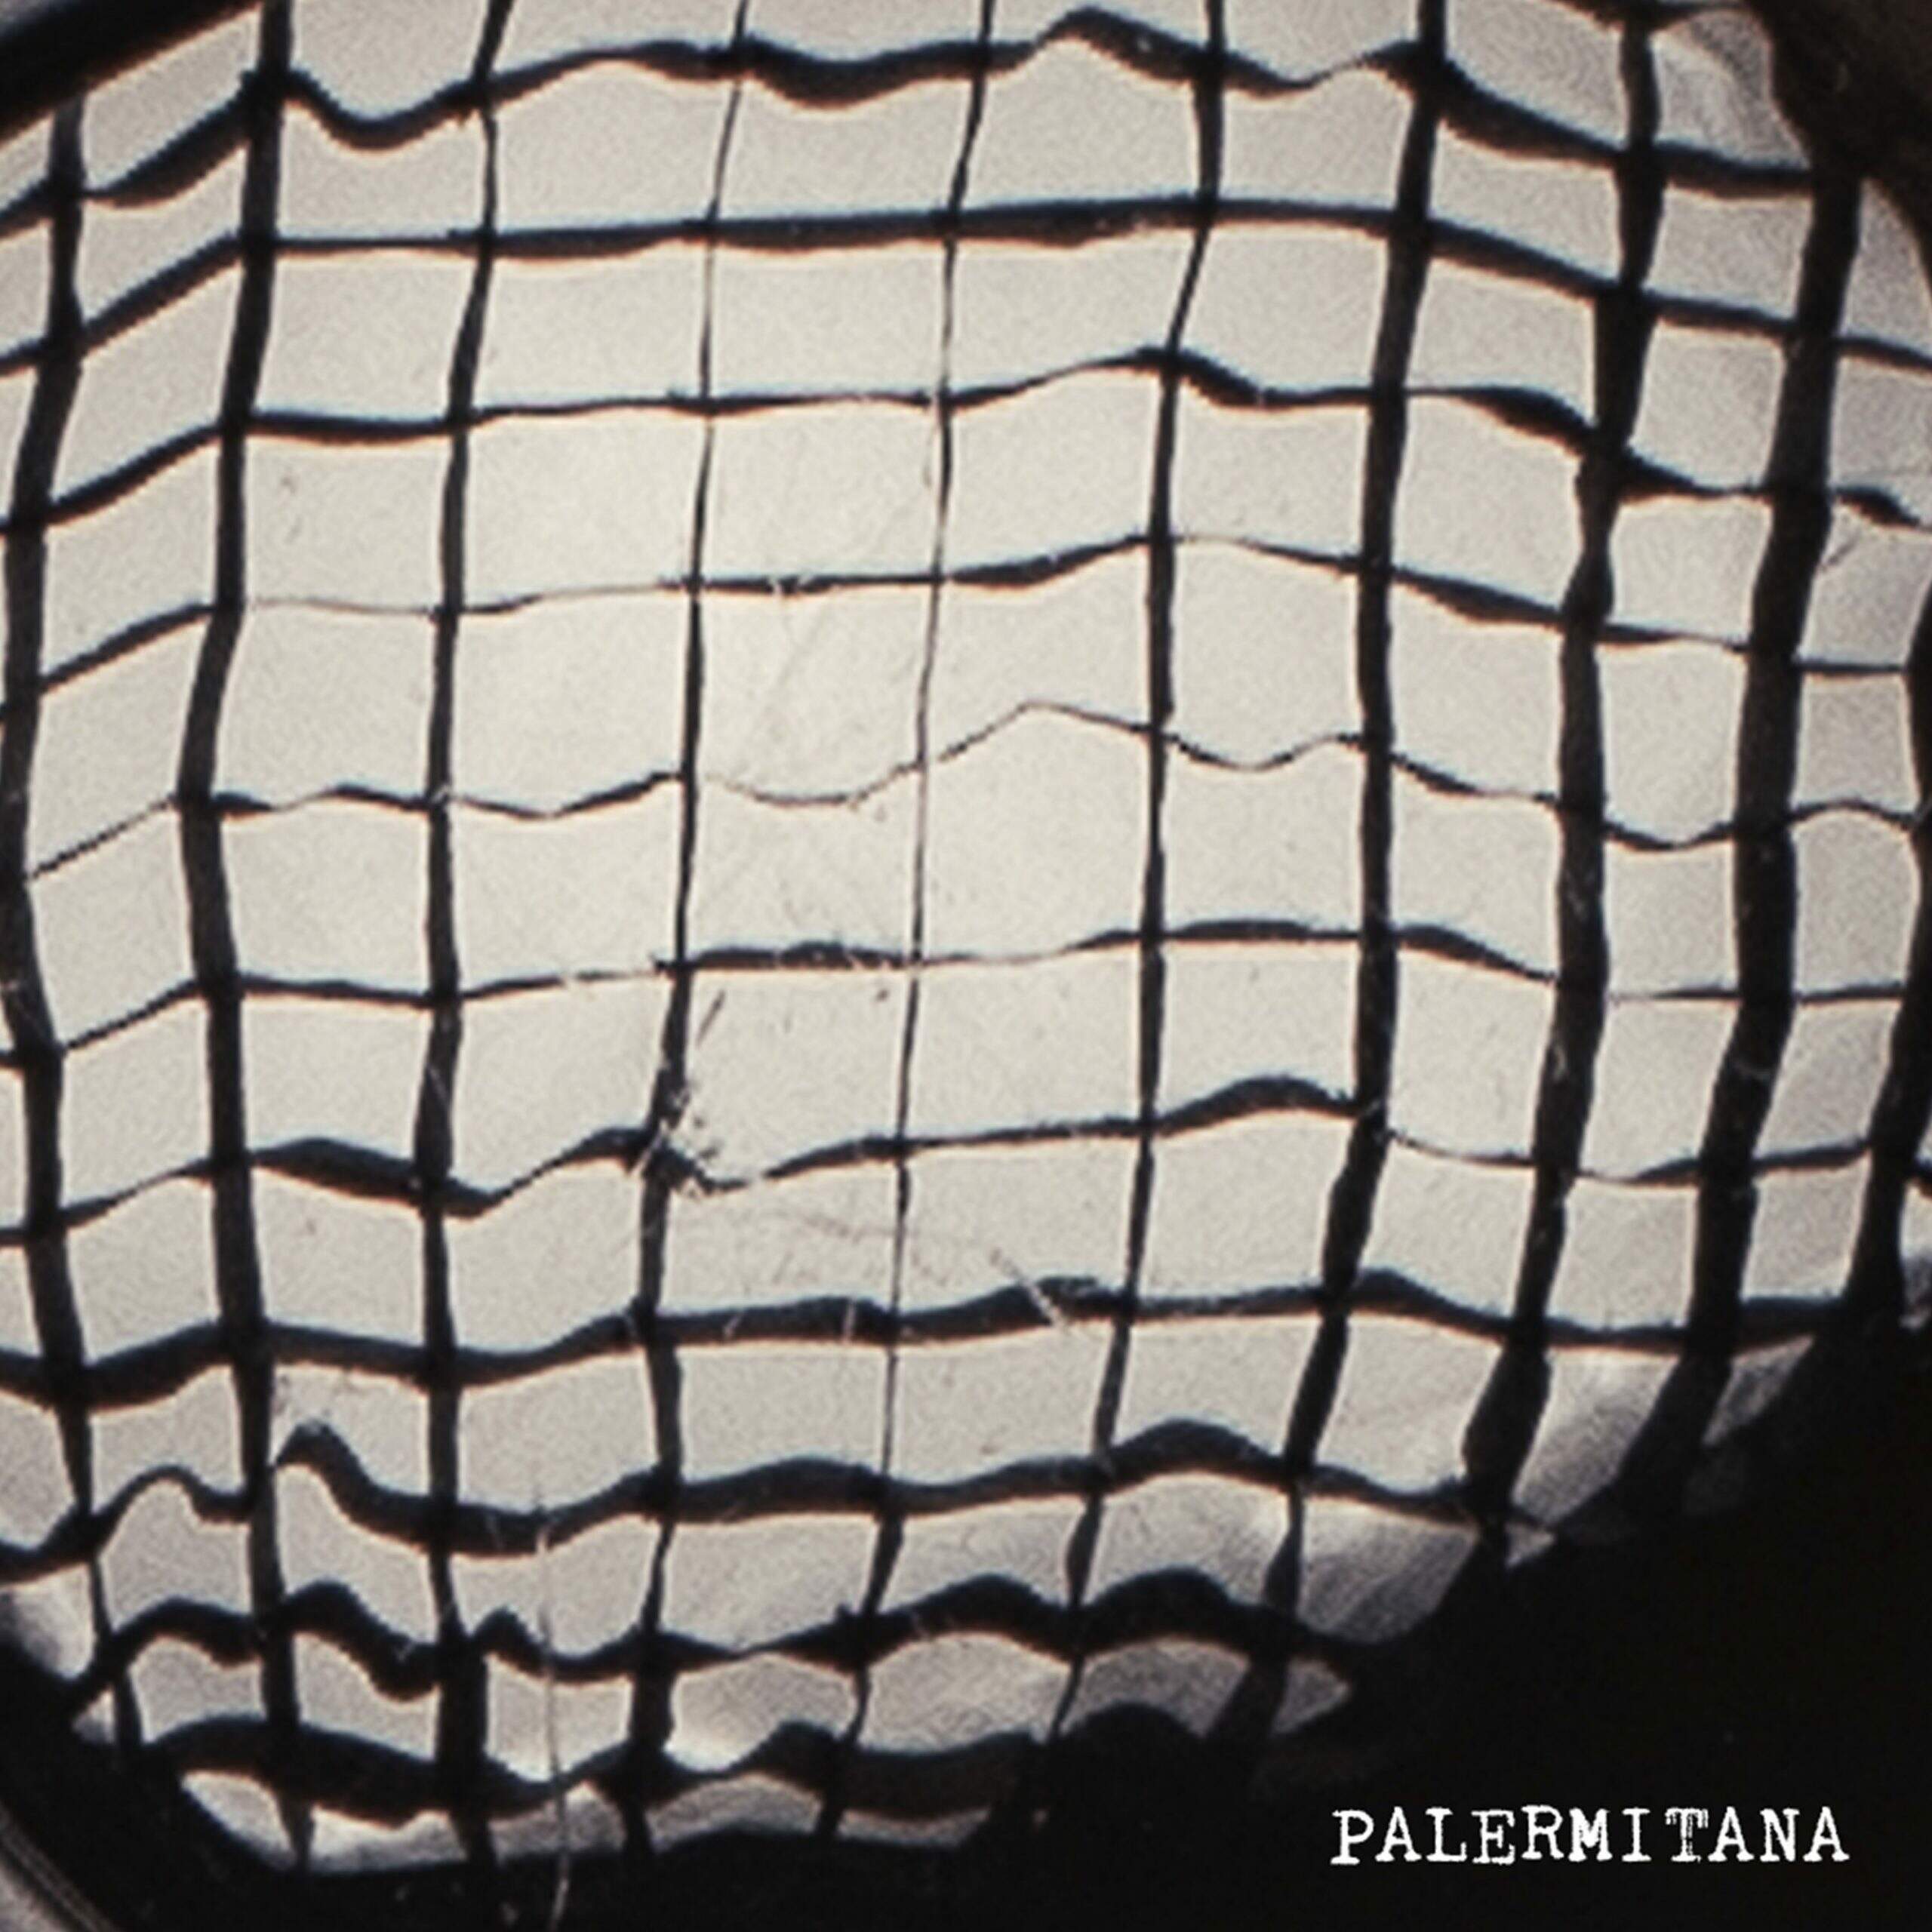 Daniel Drexler lança "Palermita", single do seu próximo álbum "AIRE"